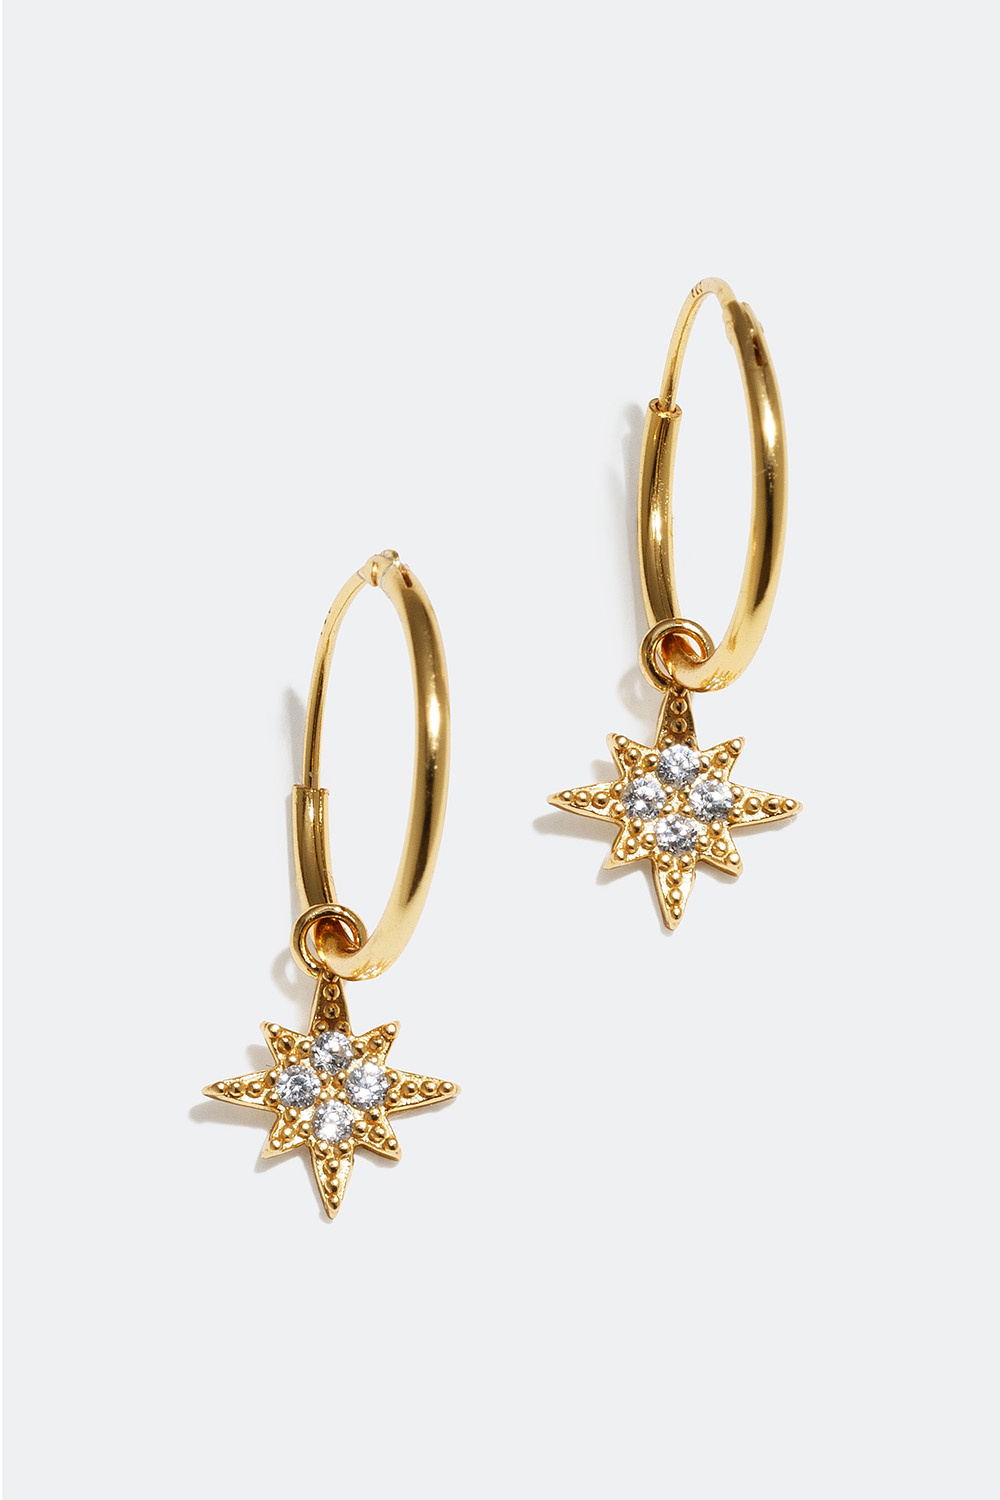 Små øreringer med anheng formet som en stjerne, forgylt med 18K gull, 1,5 cm